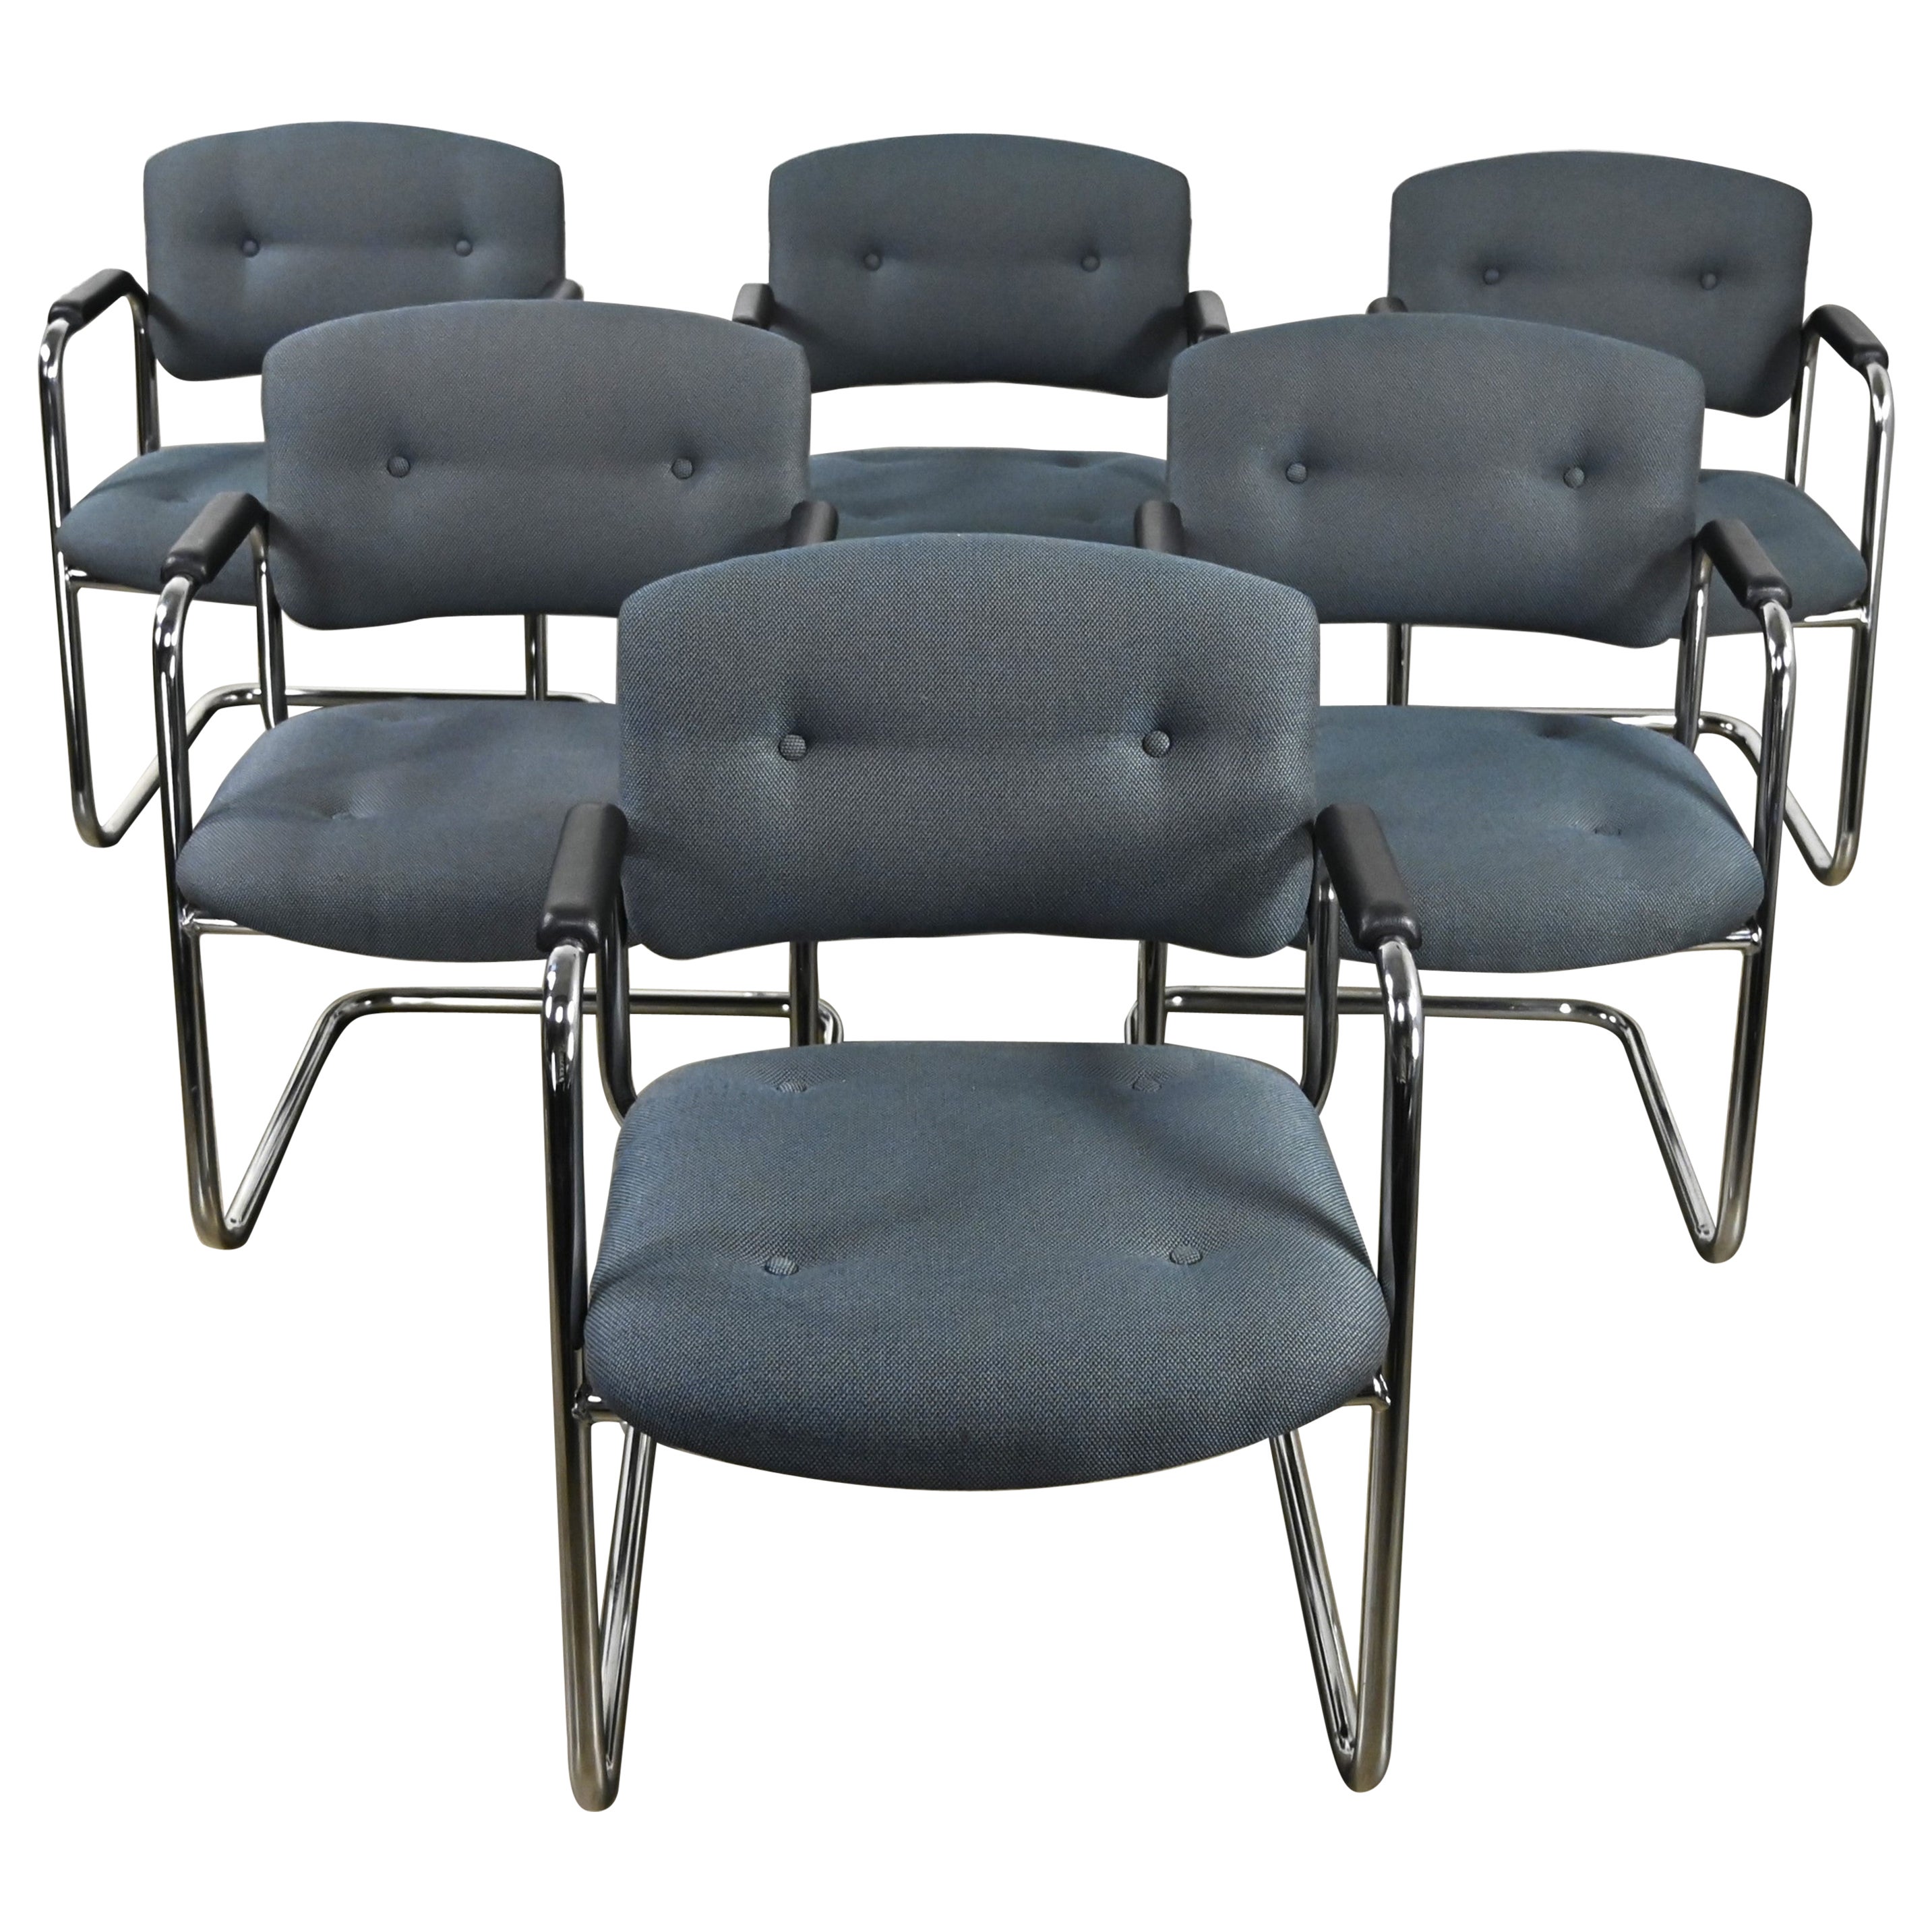 Fin du 20e siècle, chaises cantilever grises et chromées Style Steelcase Ensemble de 6 en vente